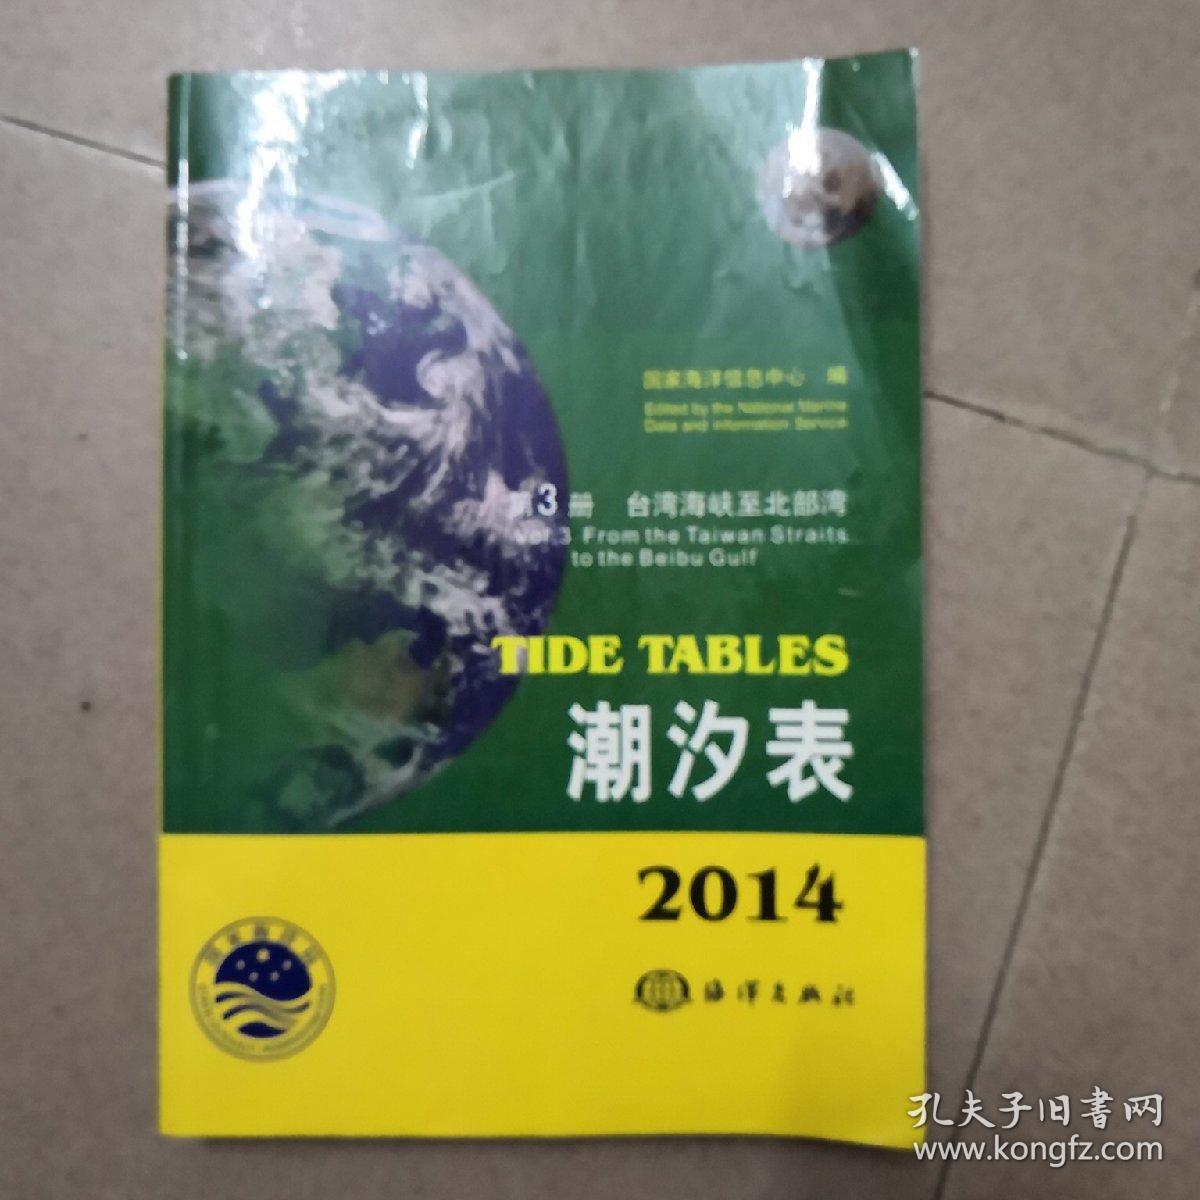 2014第三册台湾海峡至北部湾潮汐表